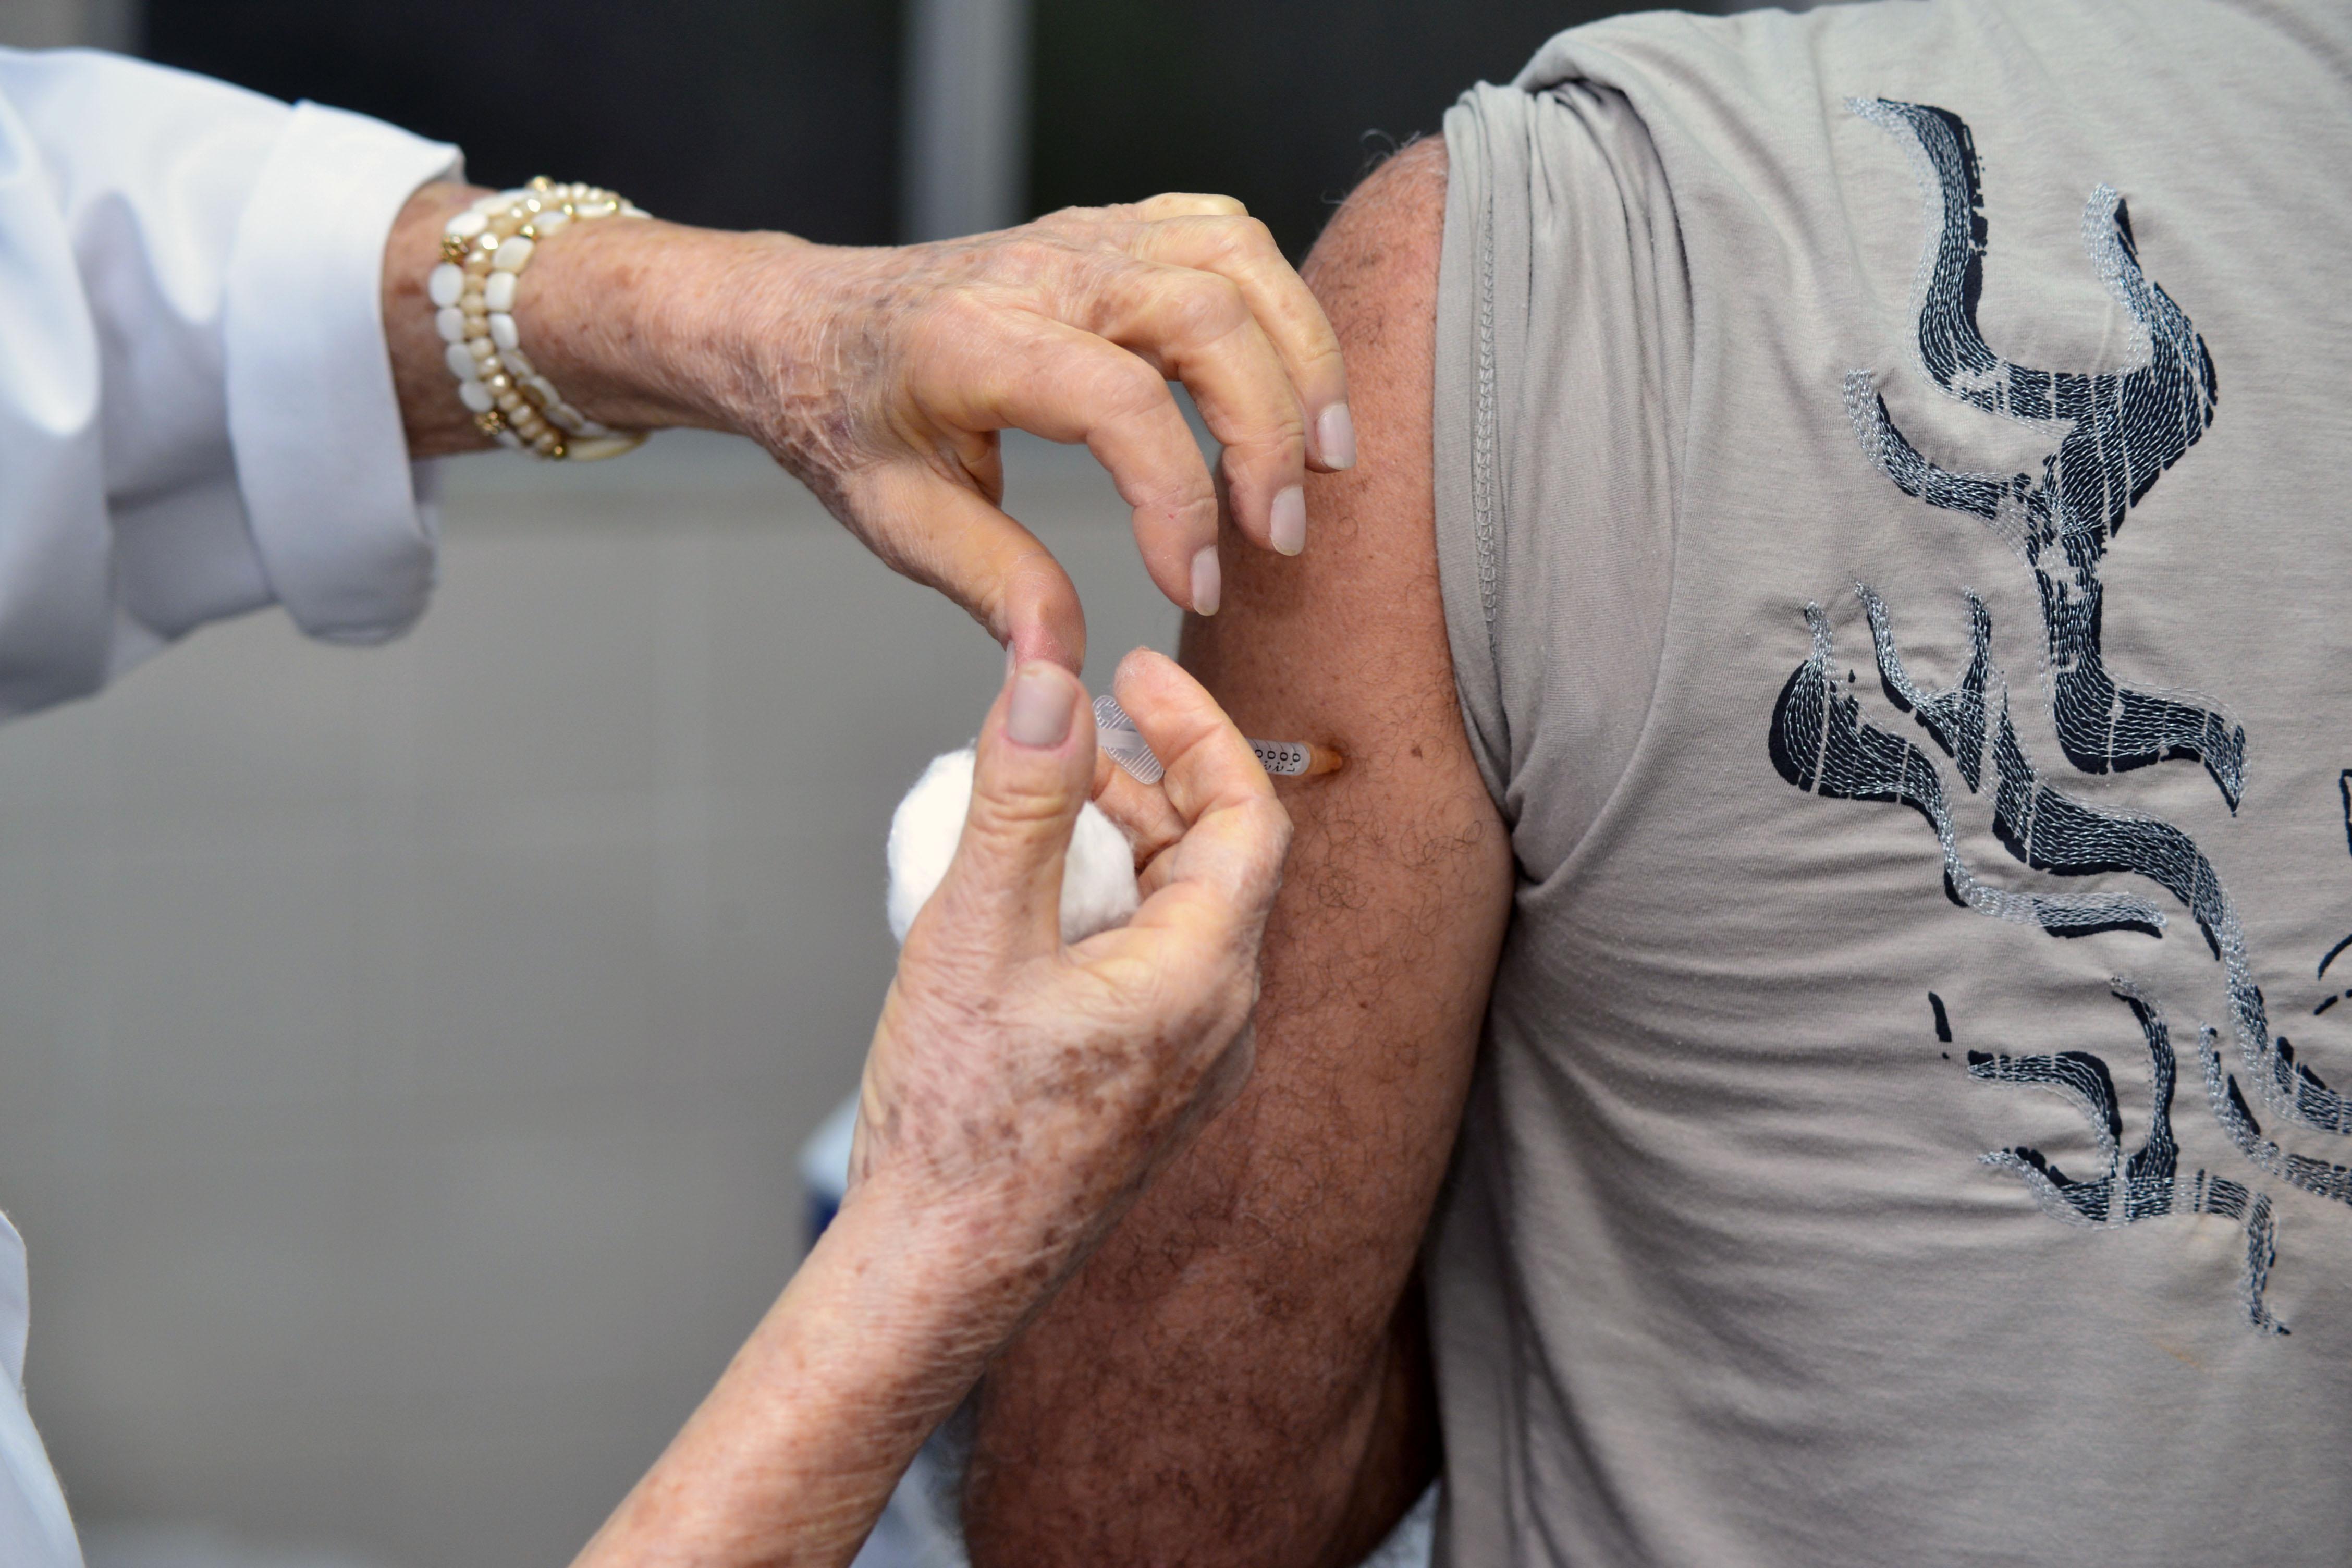 Cobertura contra gripe sobe para 82% em Salvador